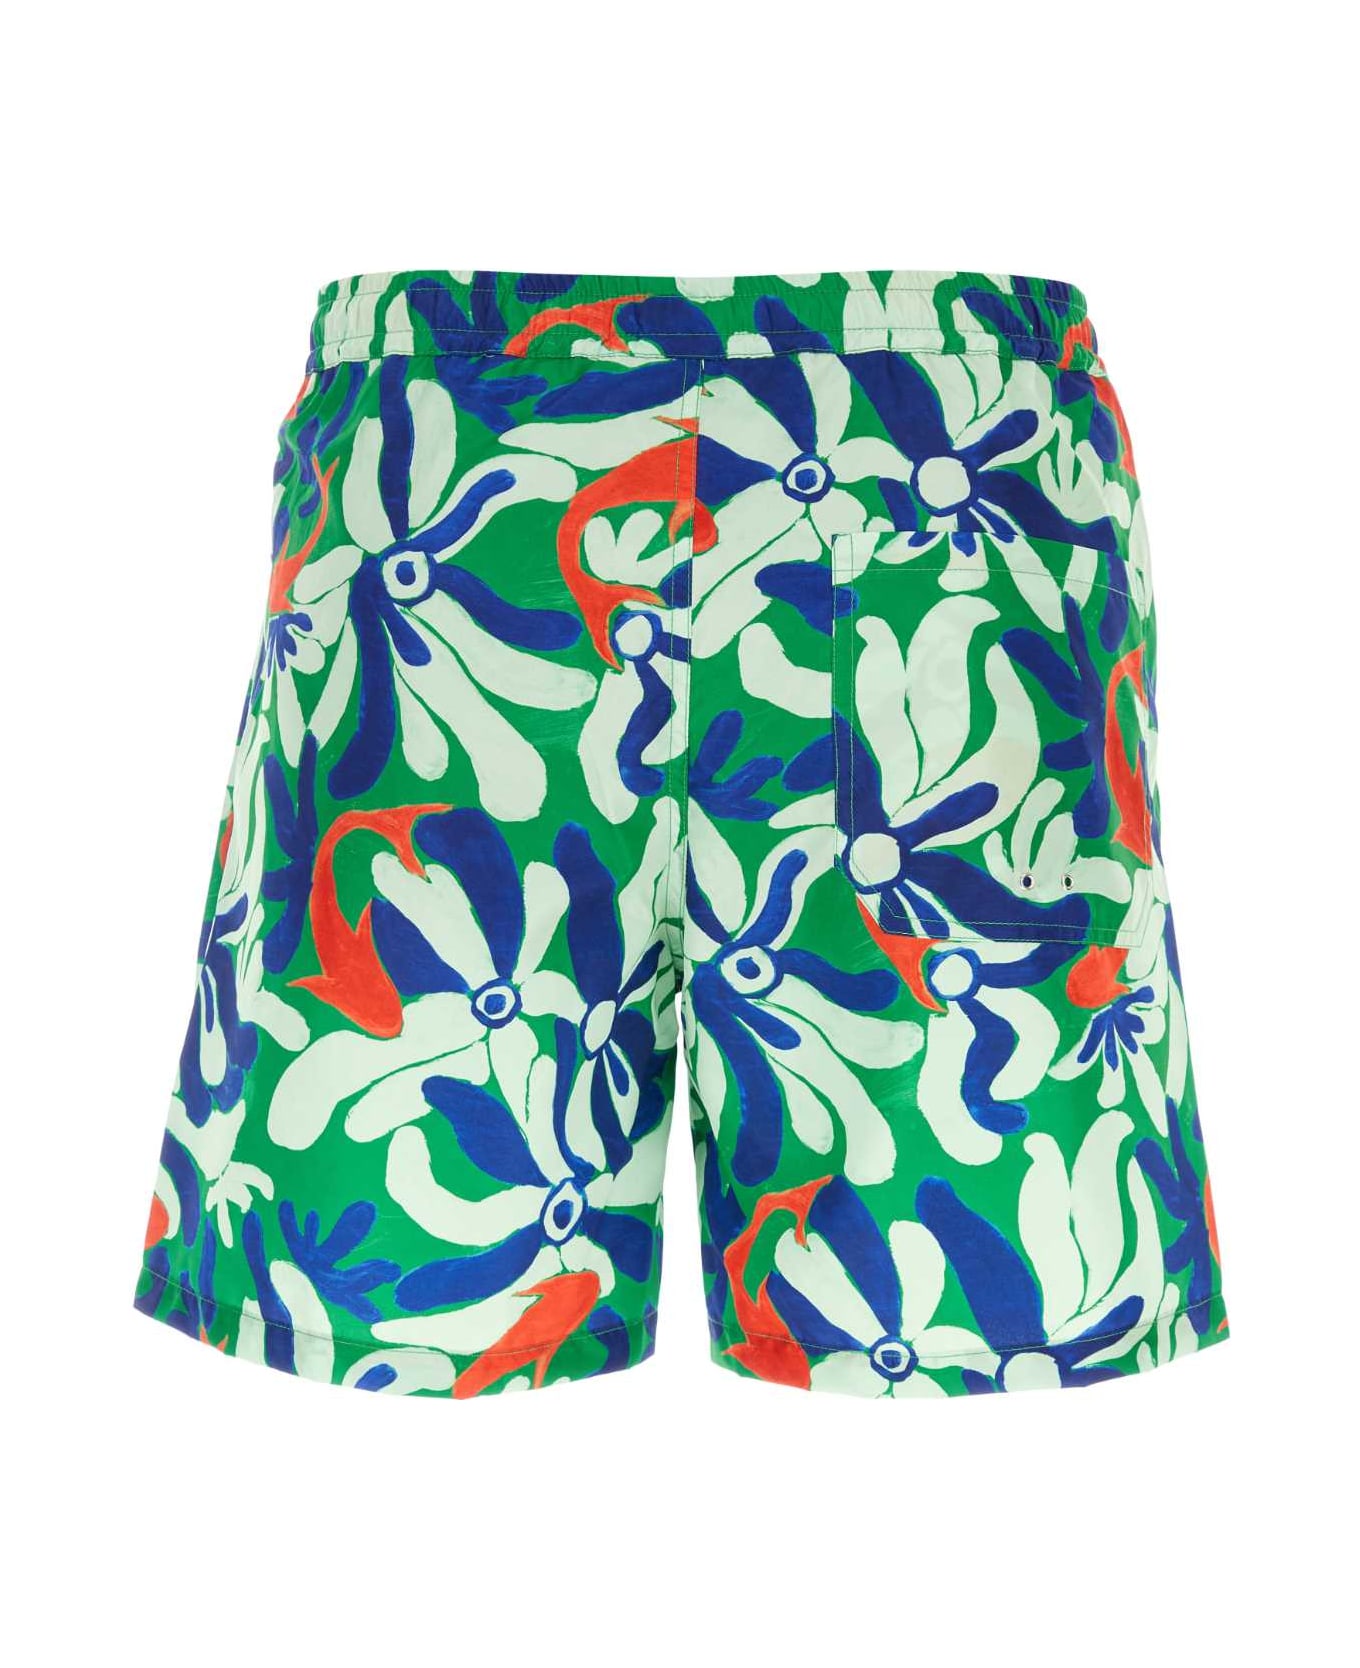 Marni Printed Polyester Swimming Shorts - CFV68